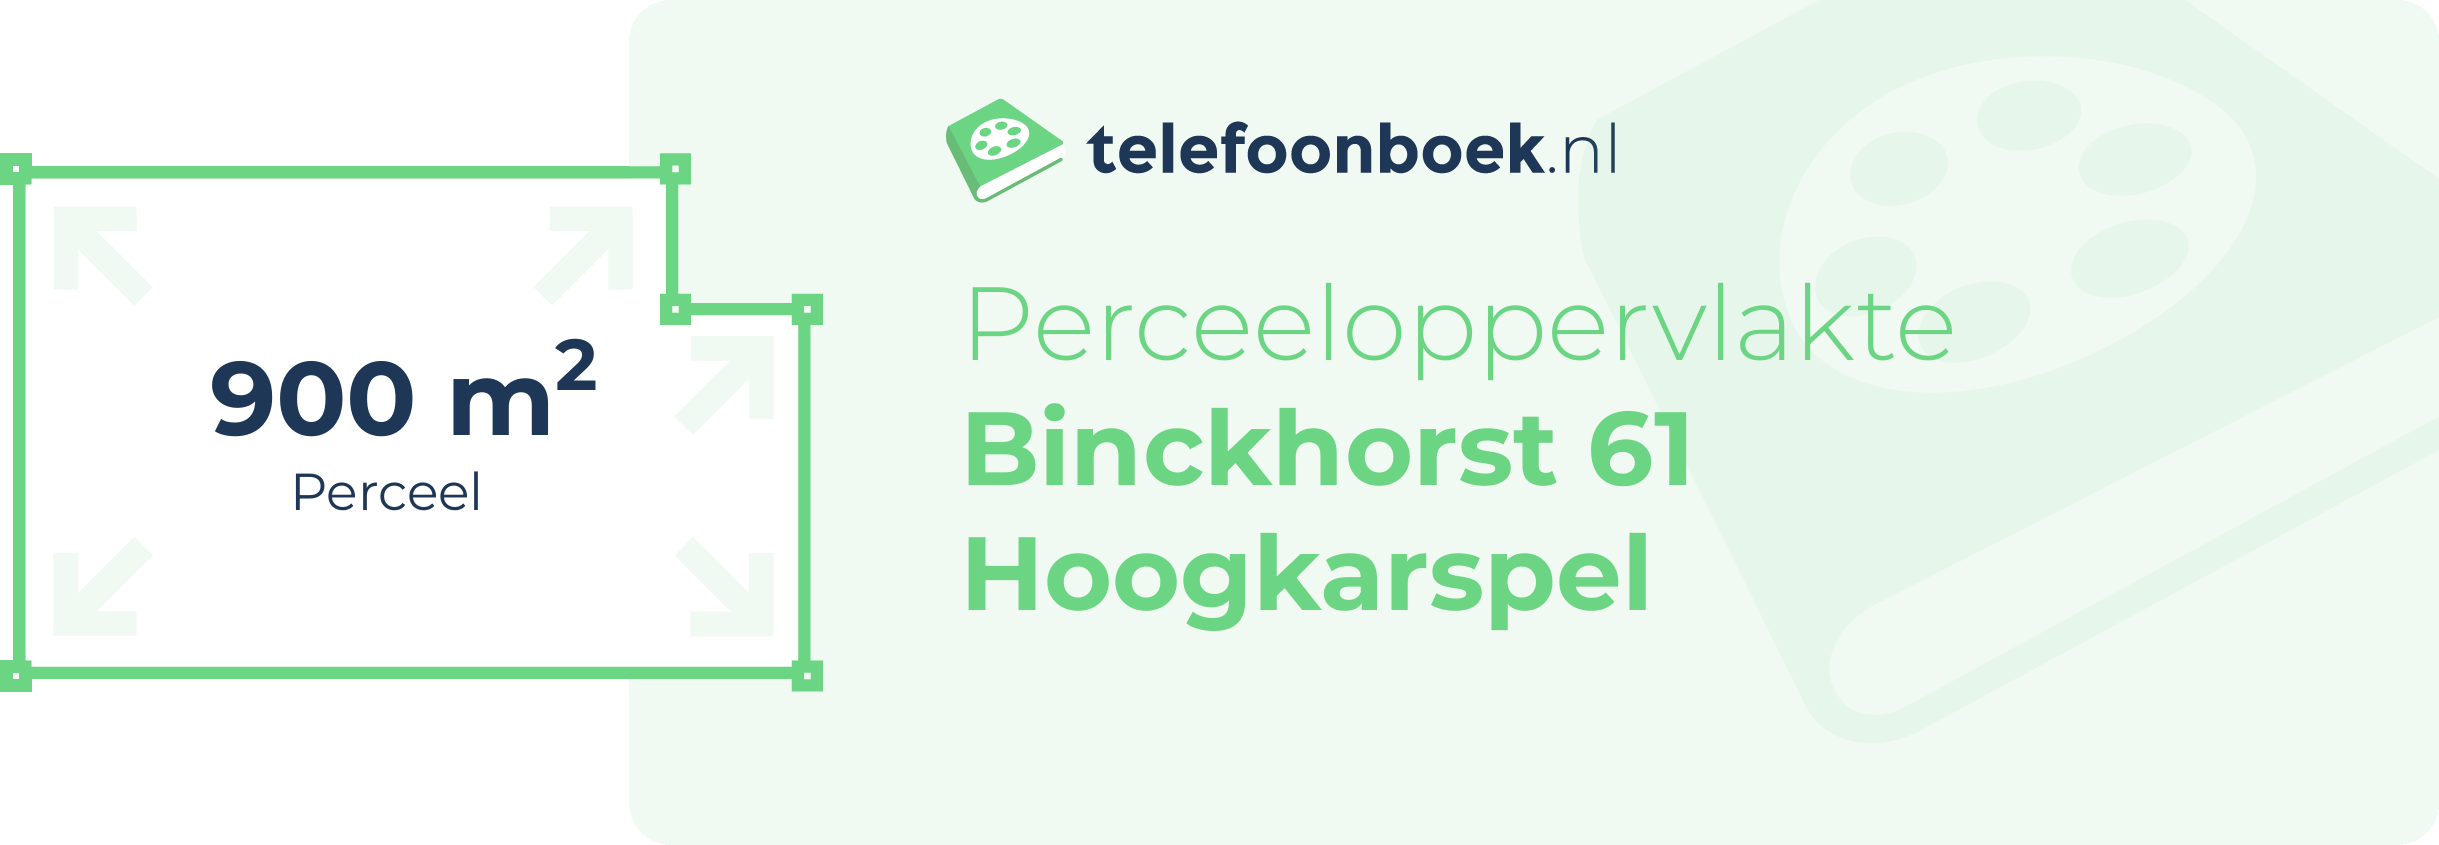 Perceeloppervlakte Binckhorst 61 Hoogkarspel